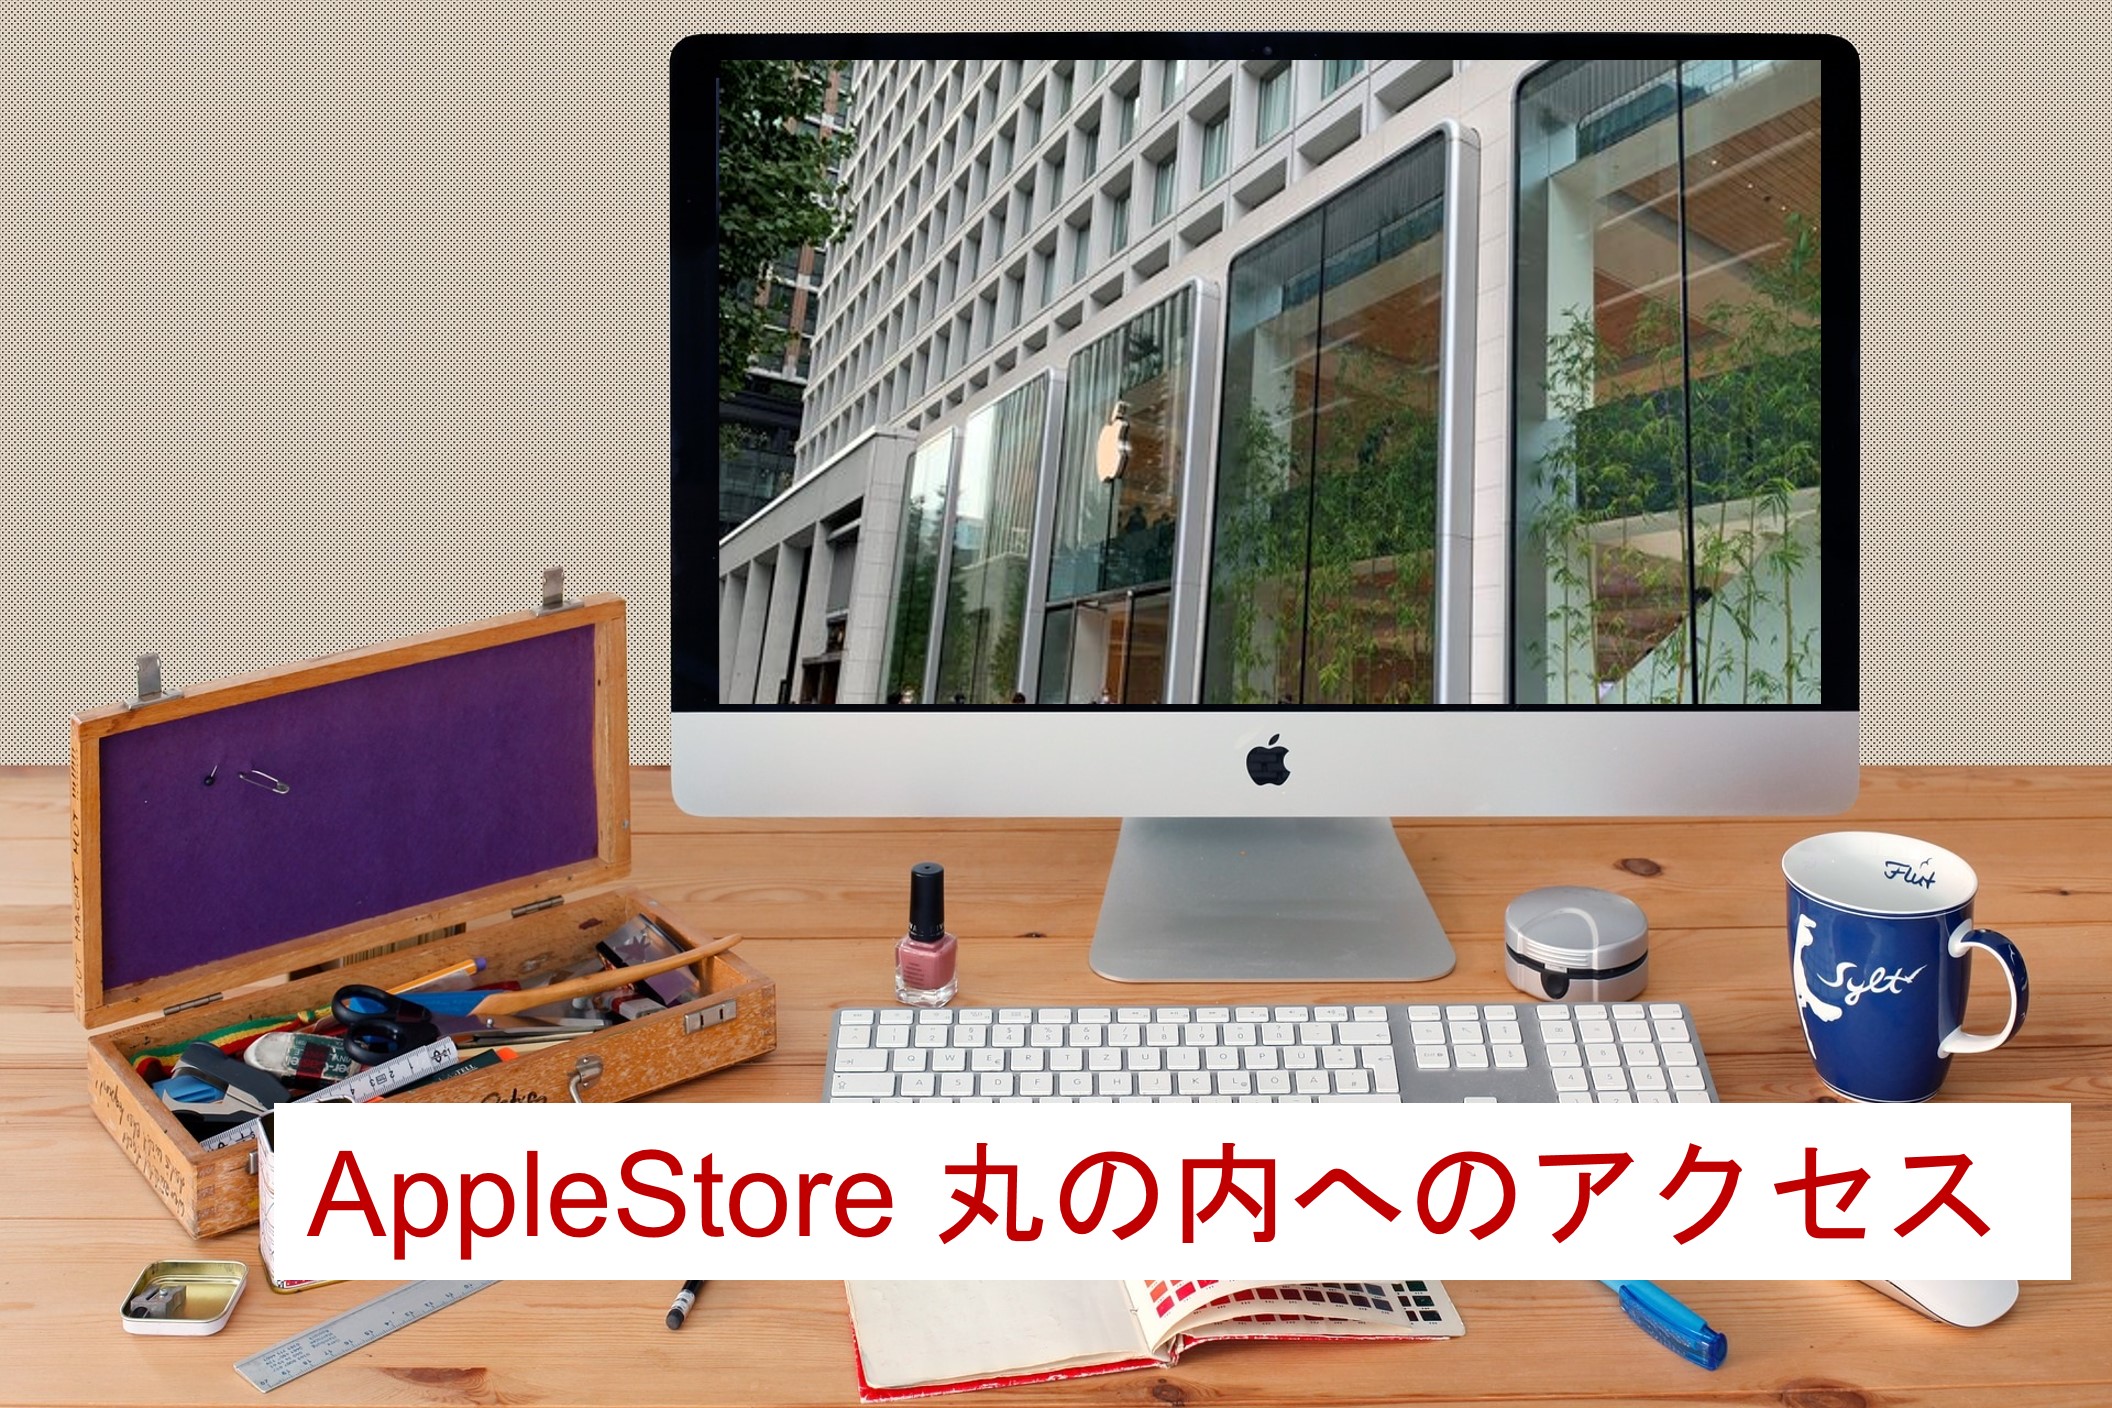 Apple Store丸の内